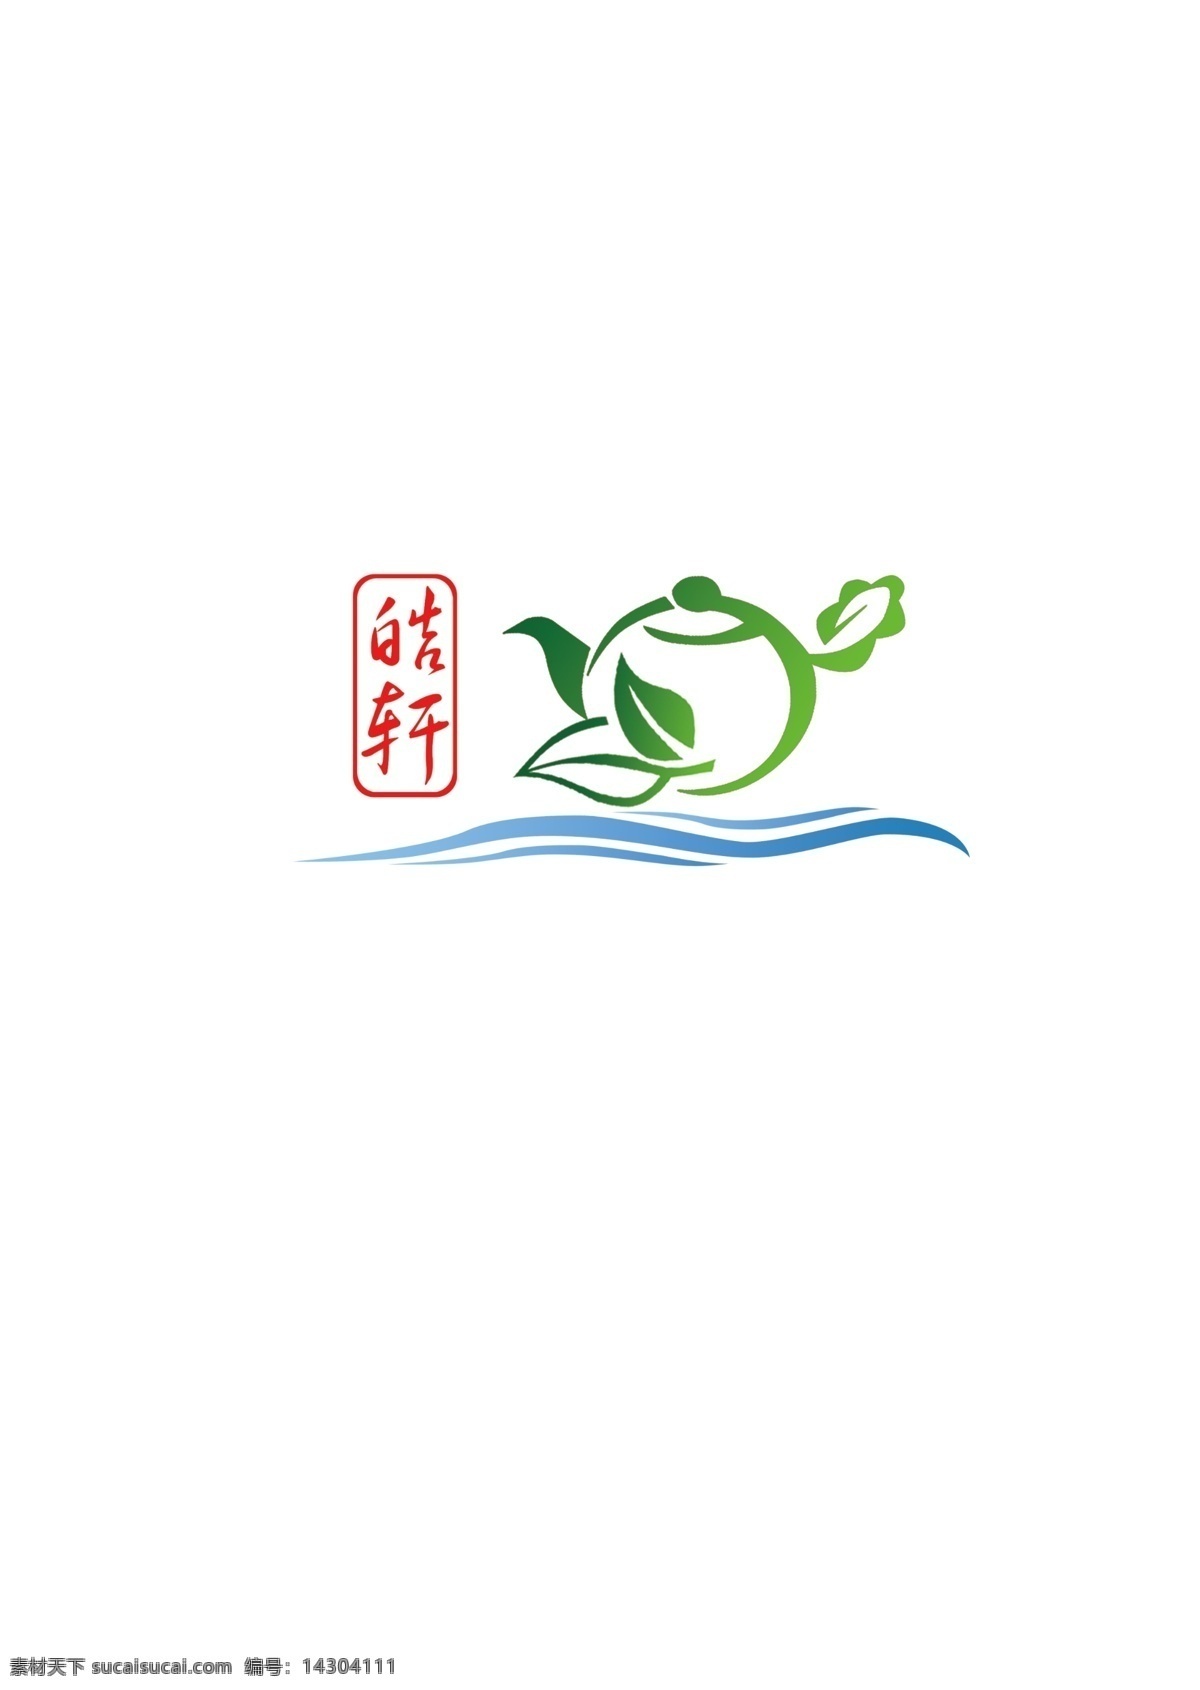 茶叶标志 标志设计 皓轩 绿叶 草地 地球 大地 医院标志 健康理念 茶叶 中国元素 广告设计模板 源文件